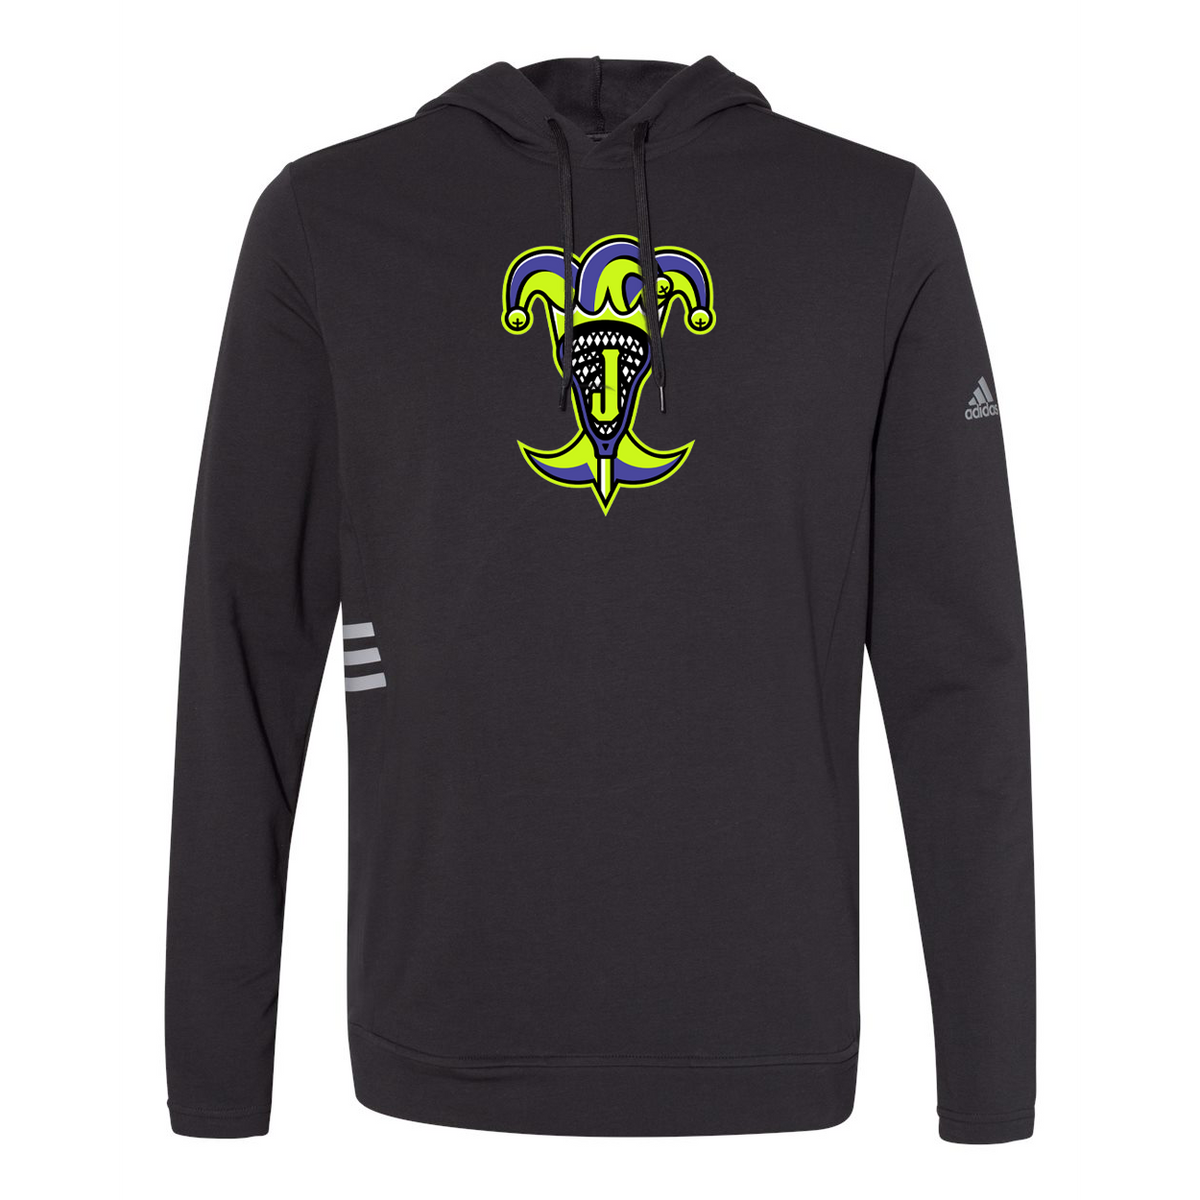 Epic Jokers Lacrosse Adidas Sweatshirt